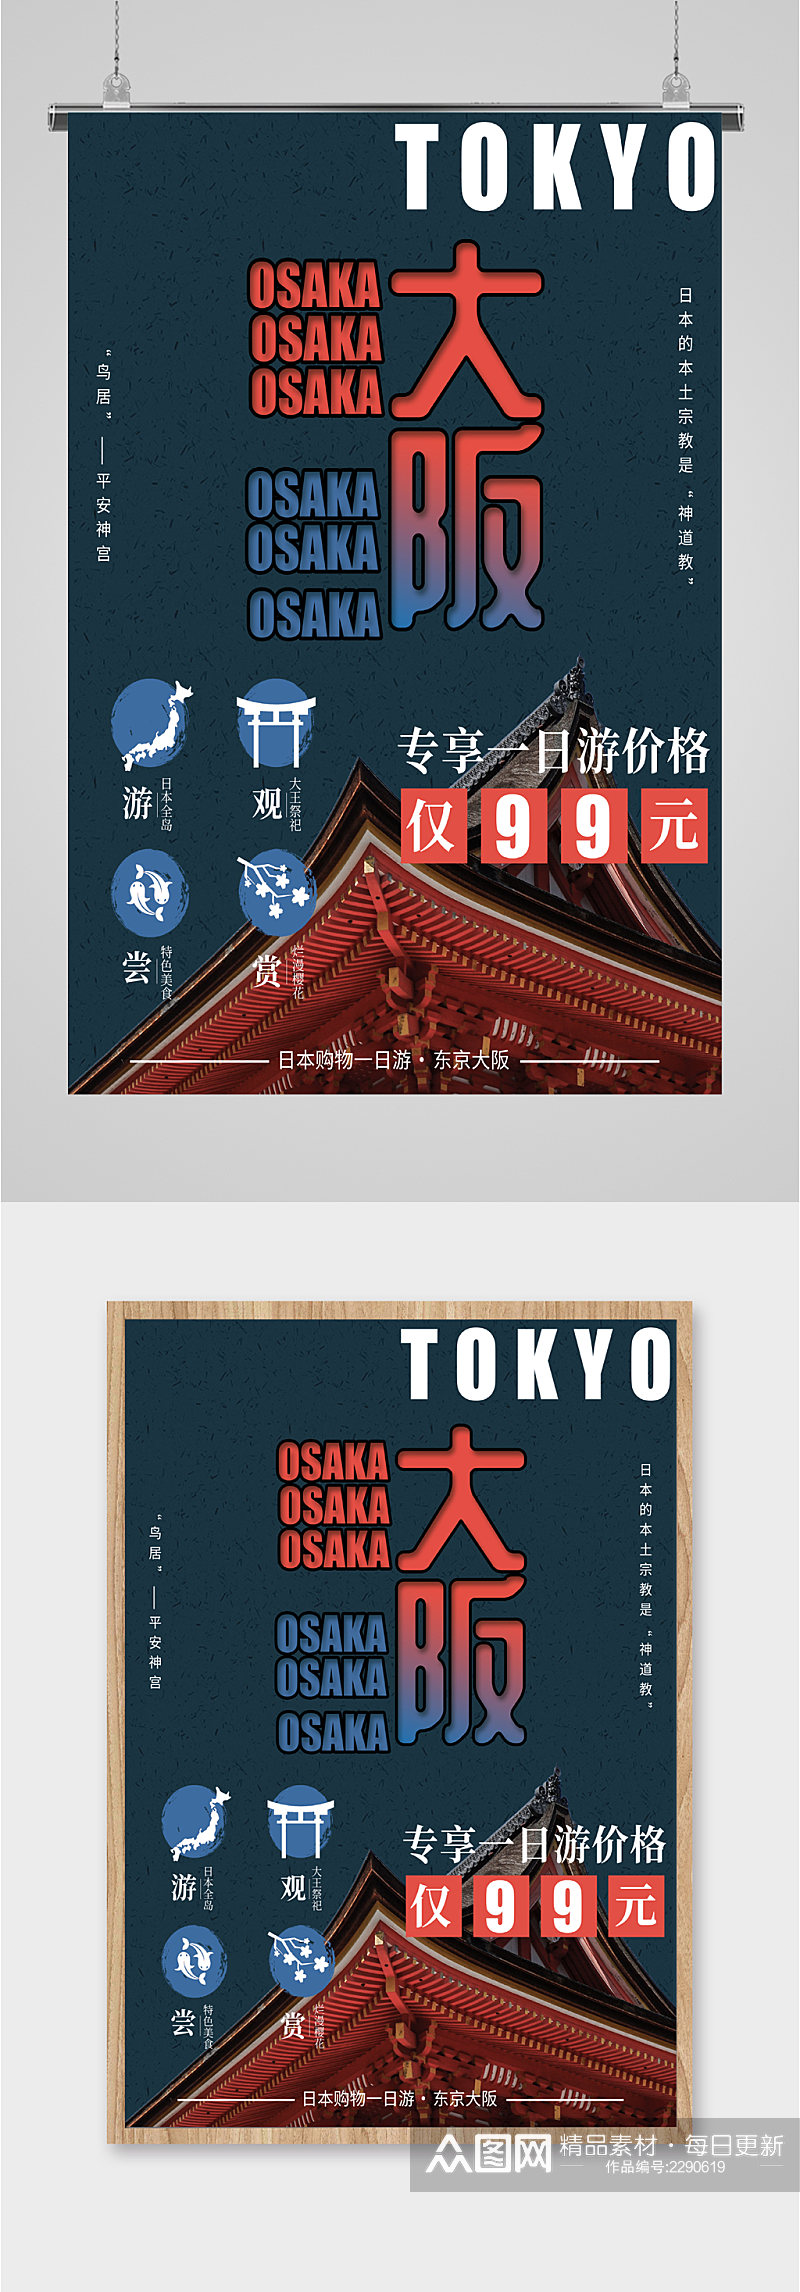 日本大阪特惠旅游海报素材